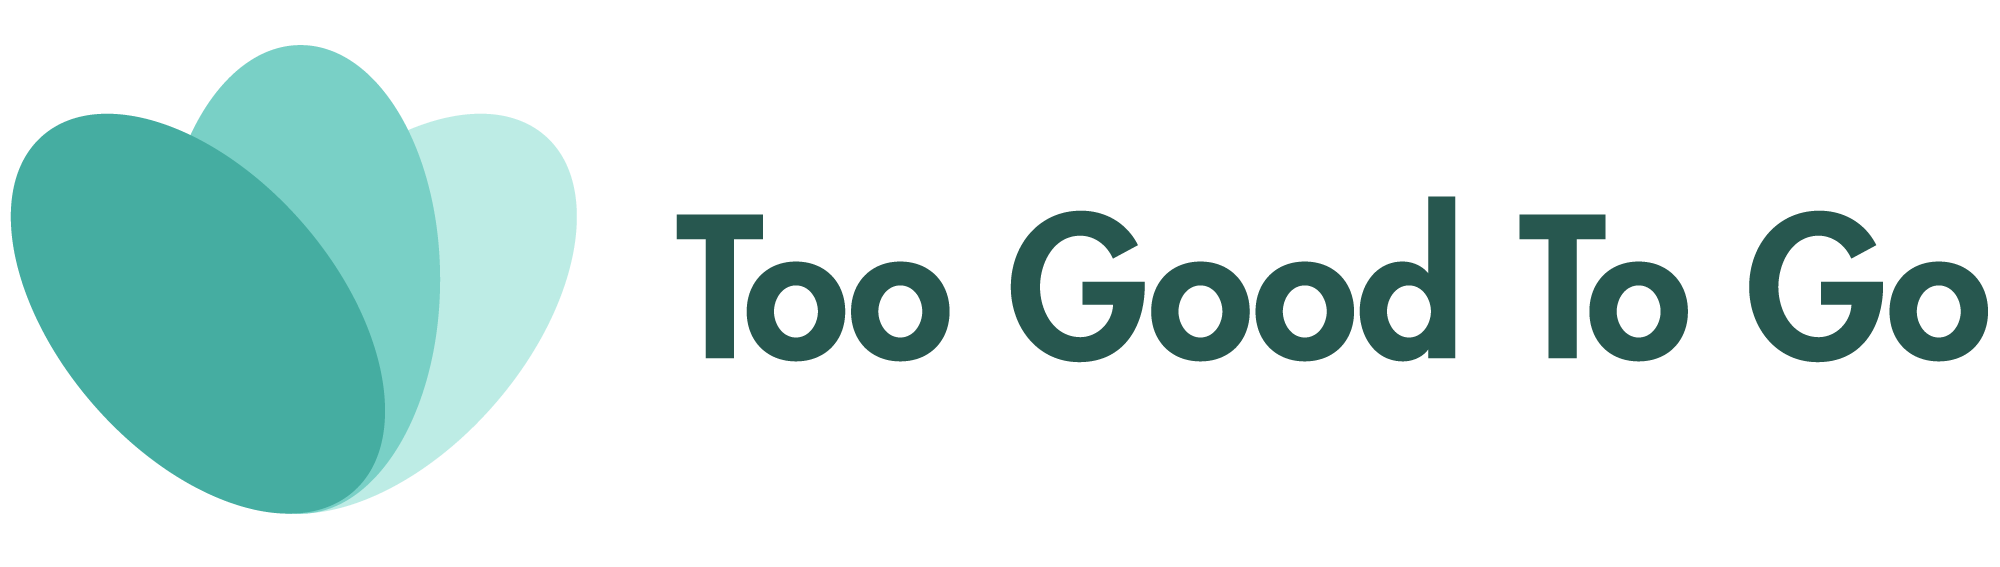 Too Good to Go – APP Para No Desperdiciar Comida